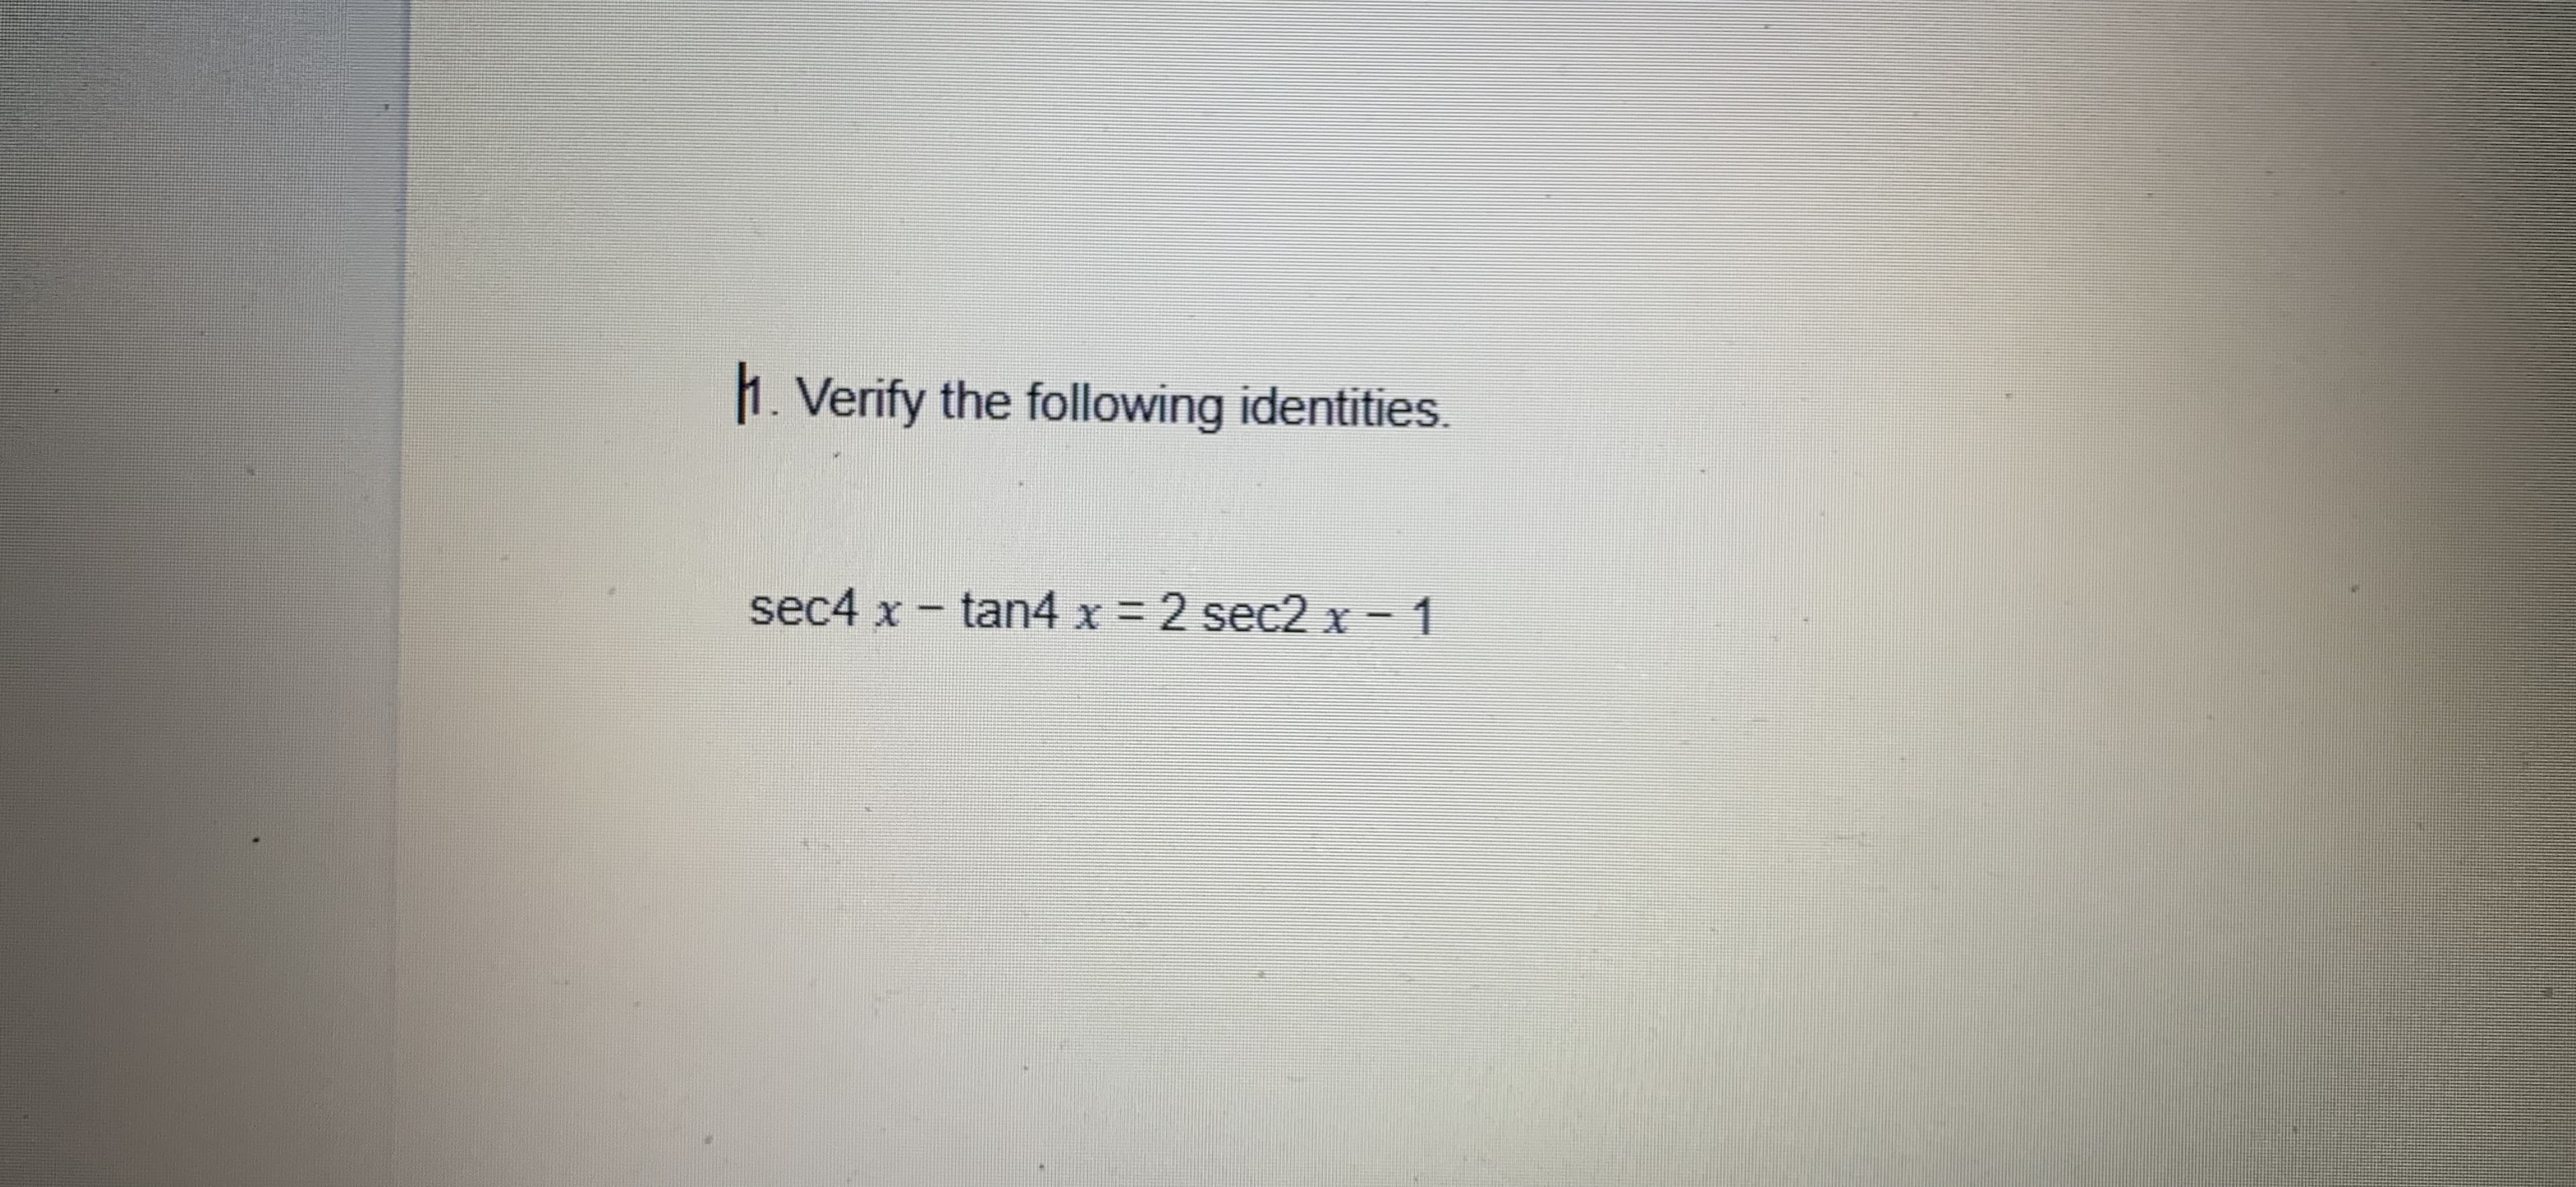 1. Verify the following identities.
sec4 x - tan4 x 2 sec2 x - 1
